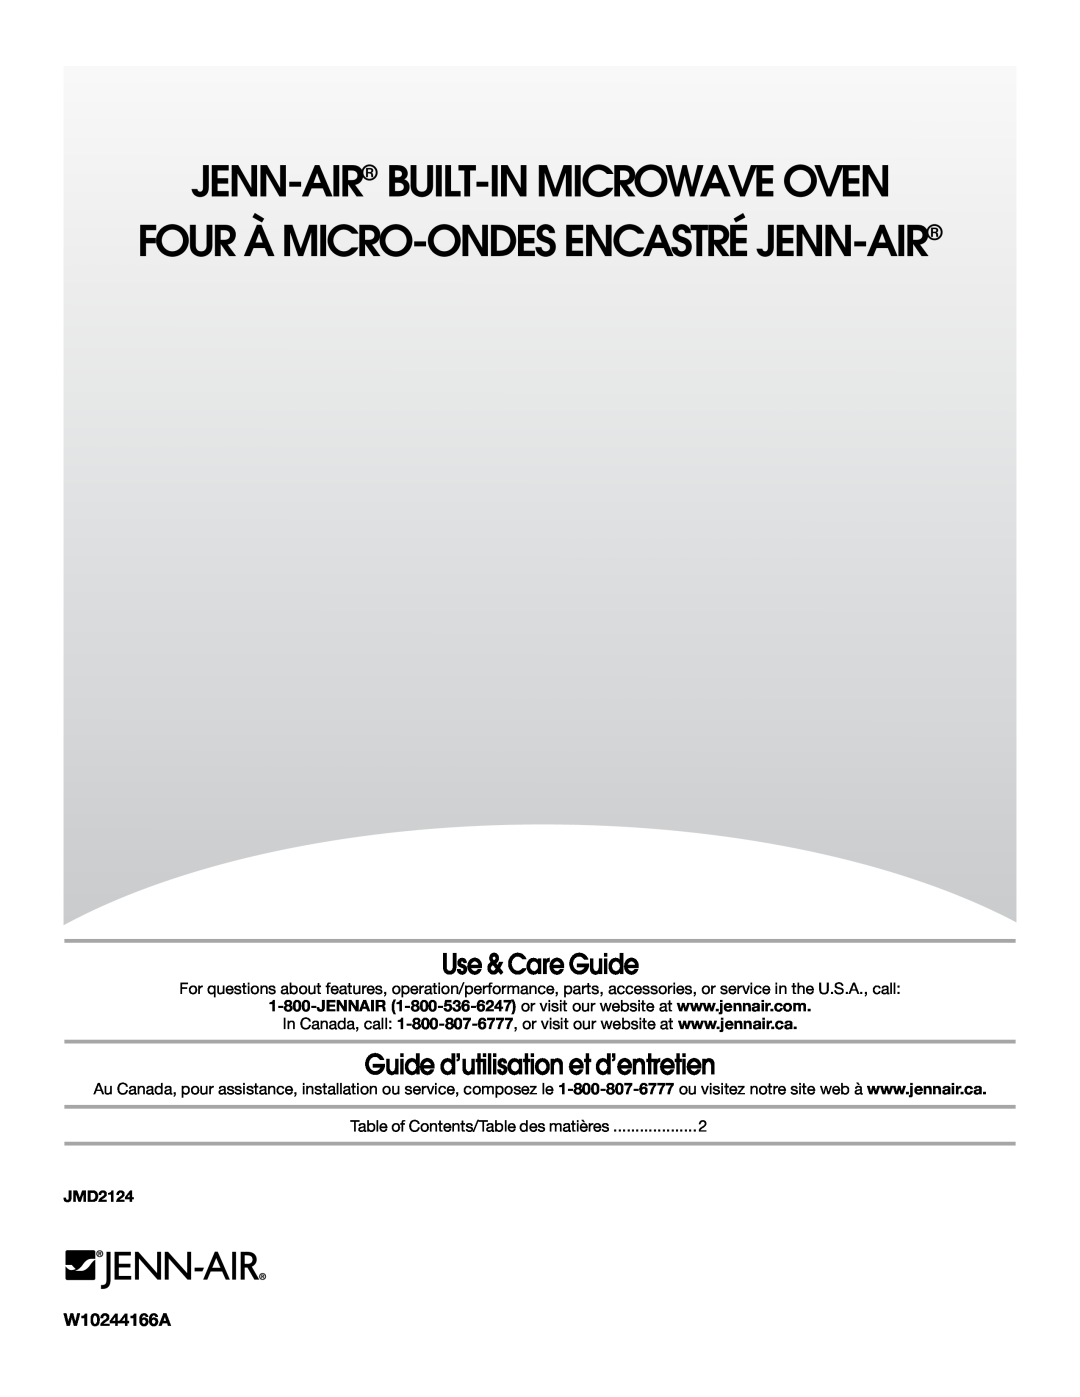 Jenn-Air JMD2124 manual Use & Care Guide, Guide d’utilisation et d’entretien, W10244166A, Jenn-Air Built-Inmicrowave Oven 